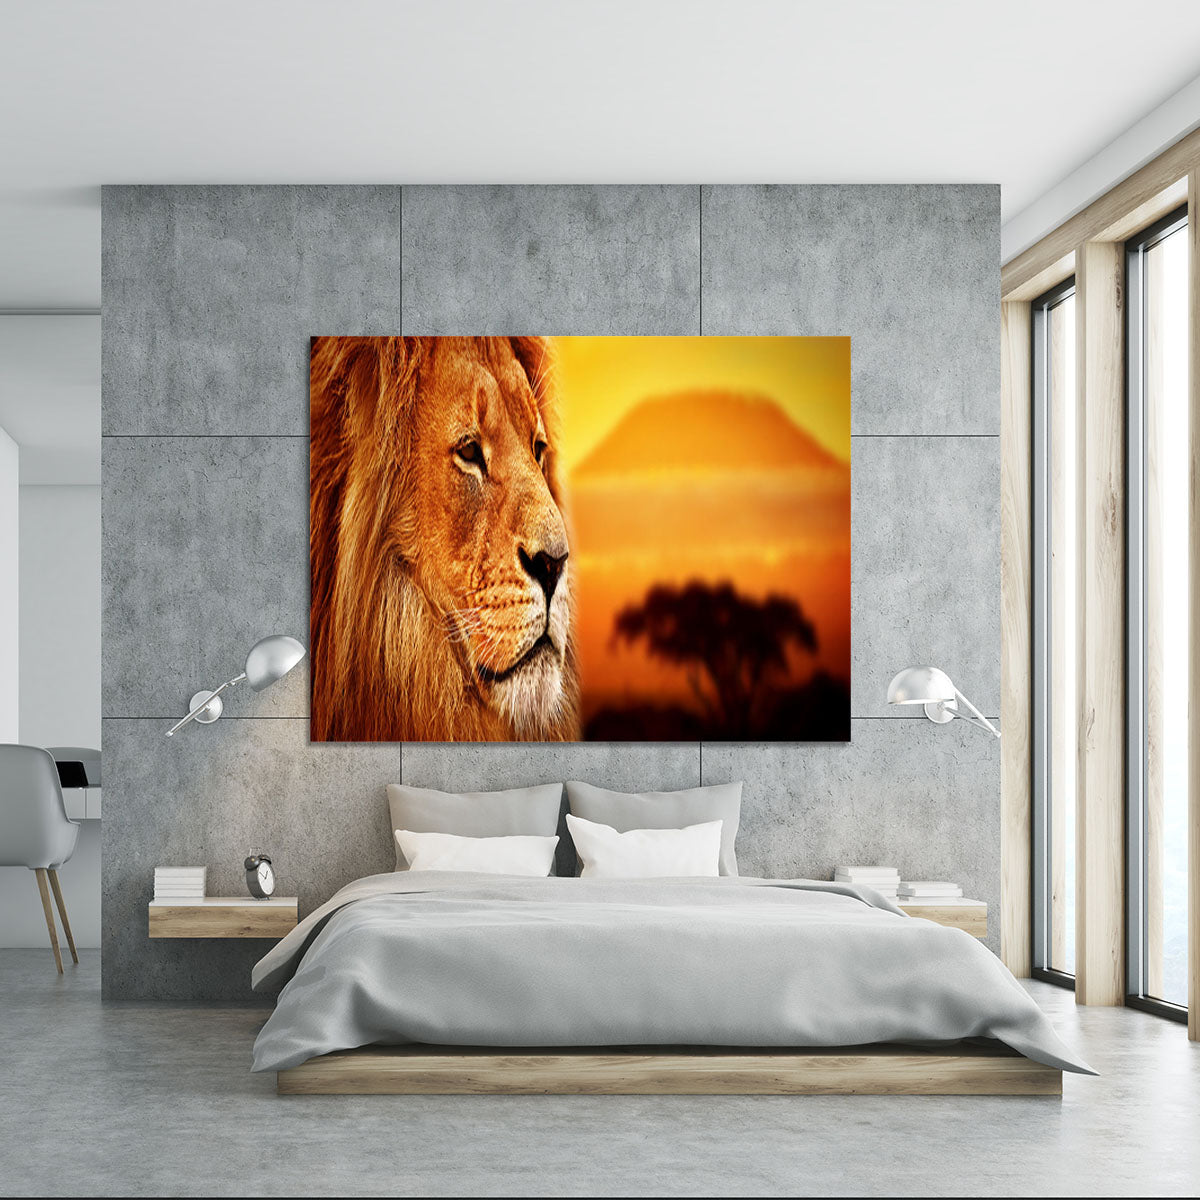 Lion portrait on savanna landscape Canvas Print or Poster - Canvas Art Rocks - 5